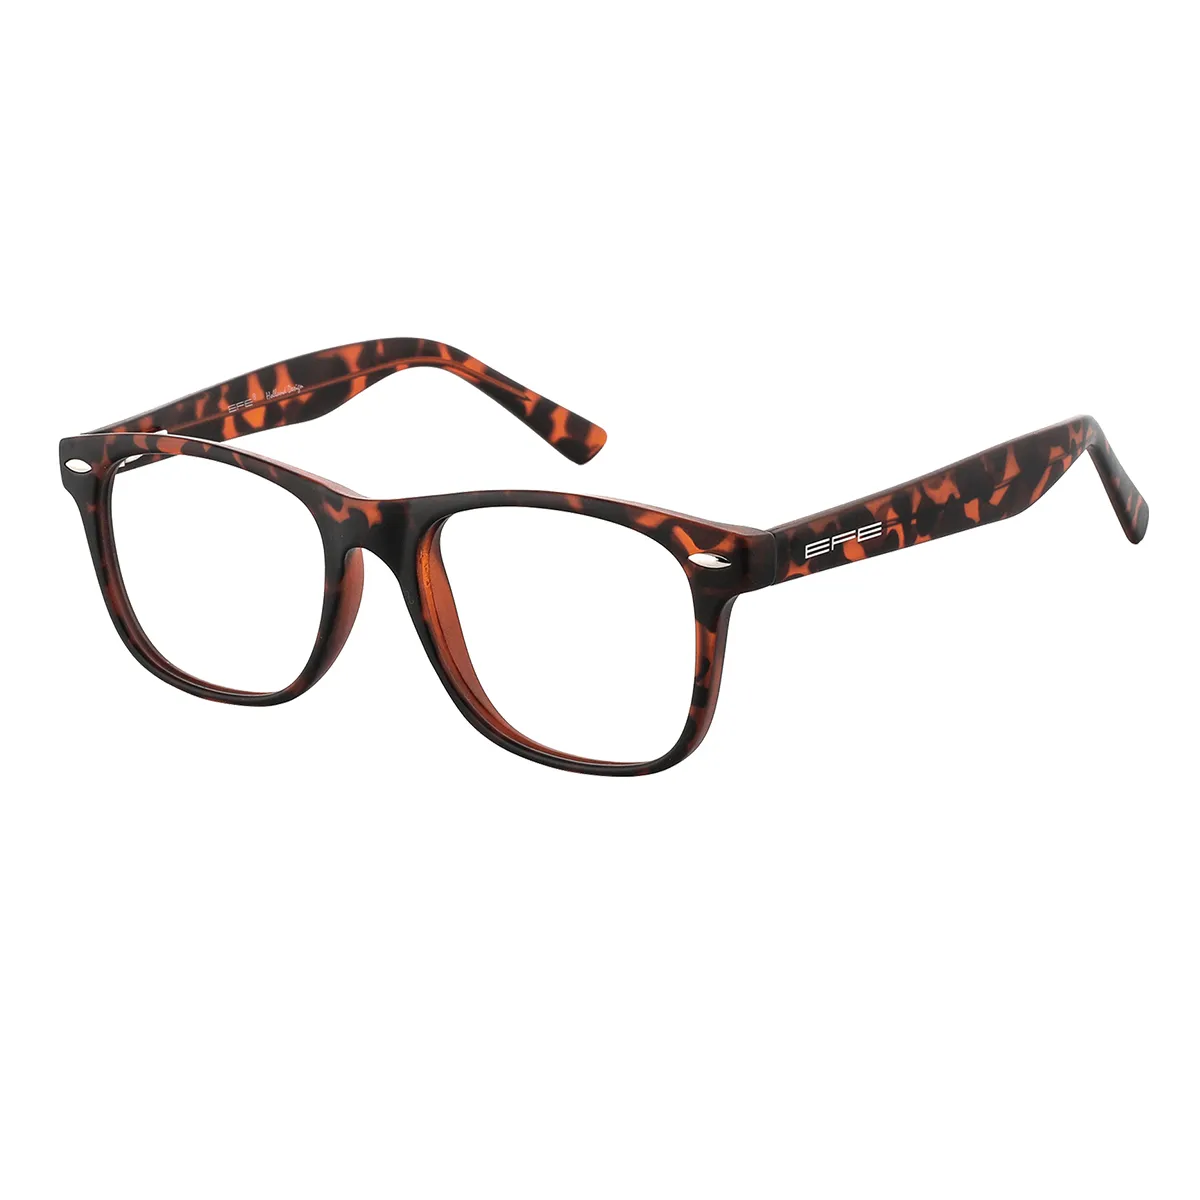 Downey - Square Tortoiseshell Glasses for Men & Women